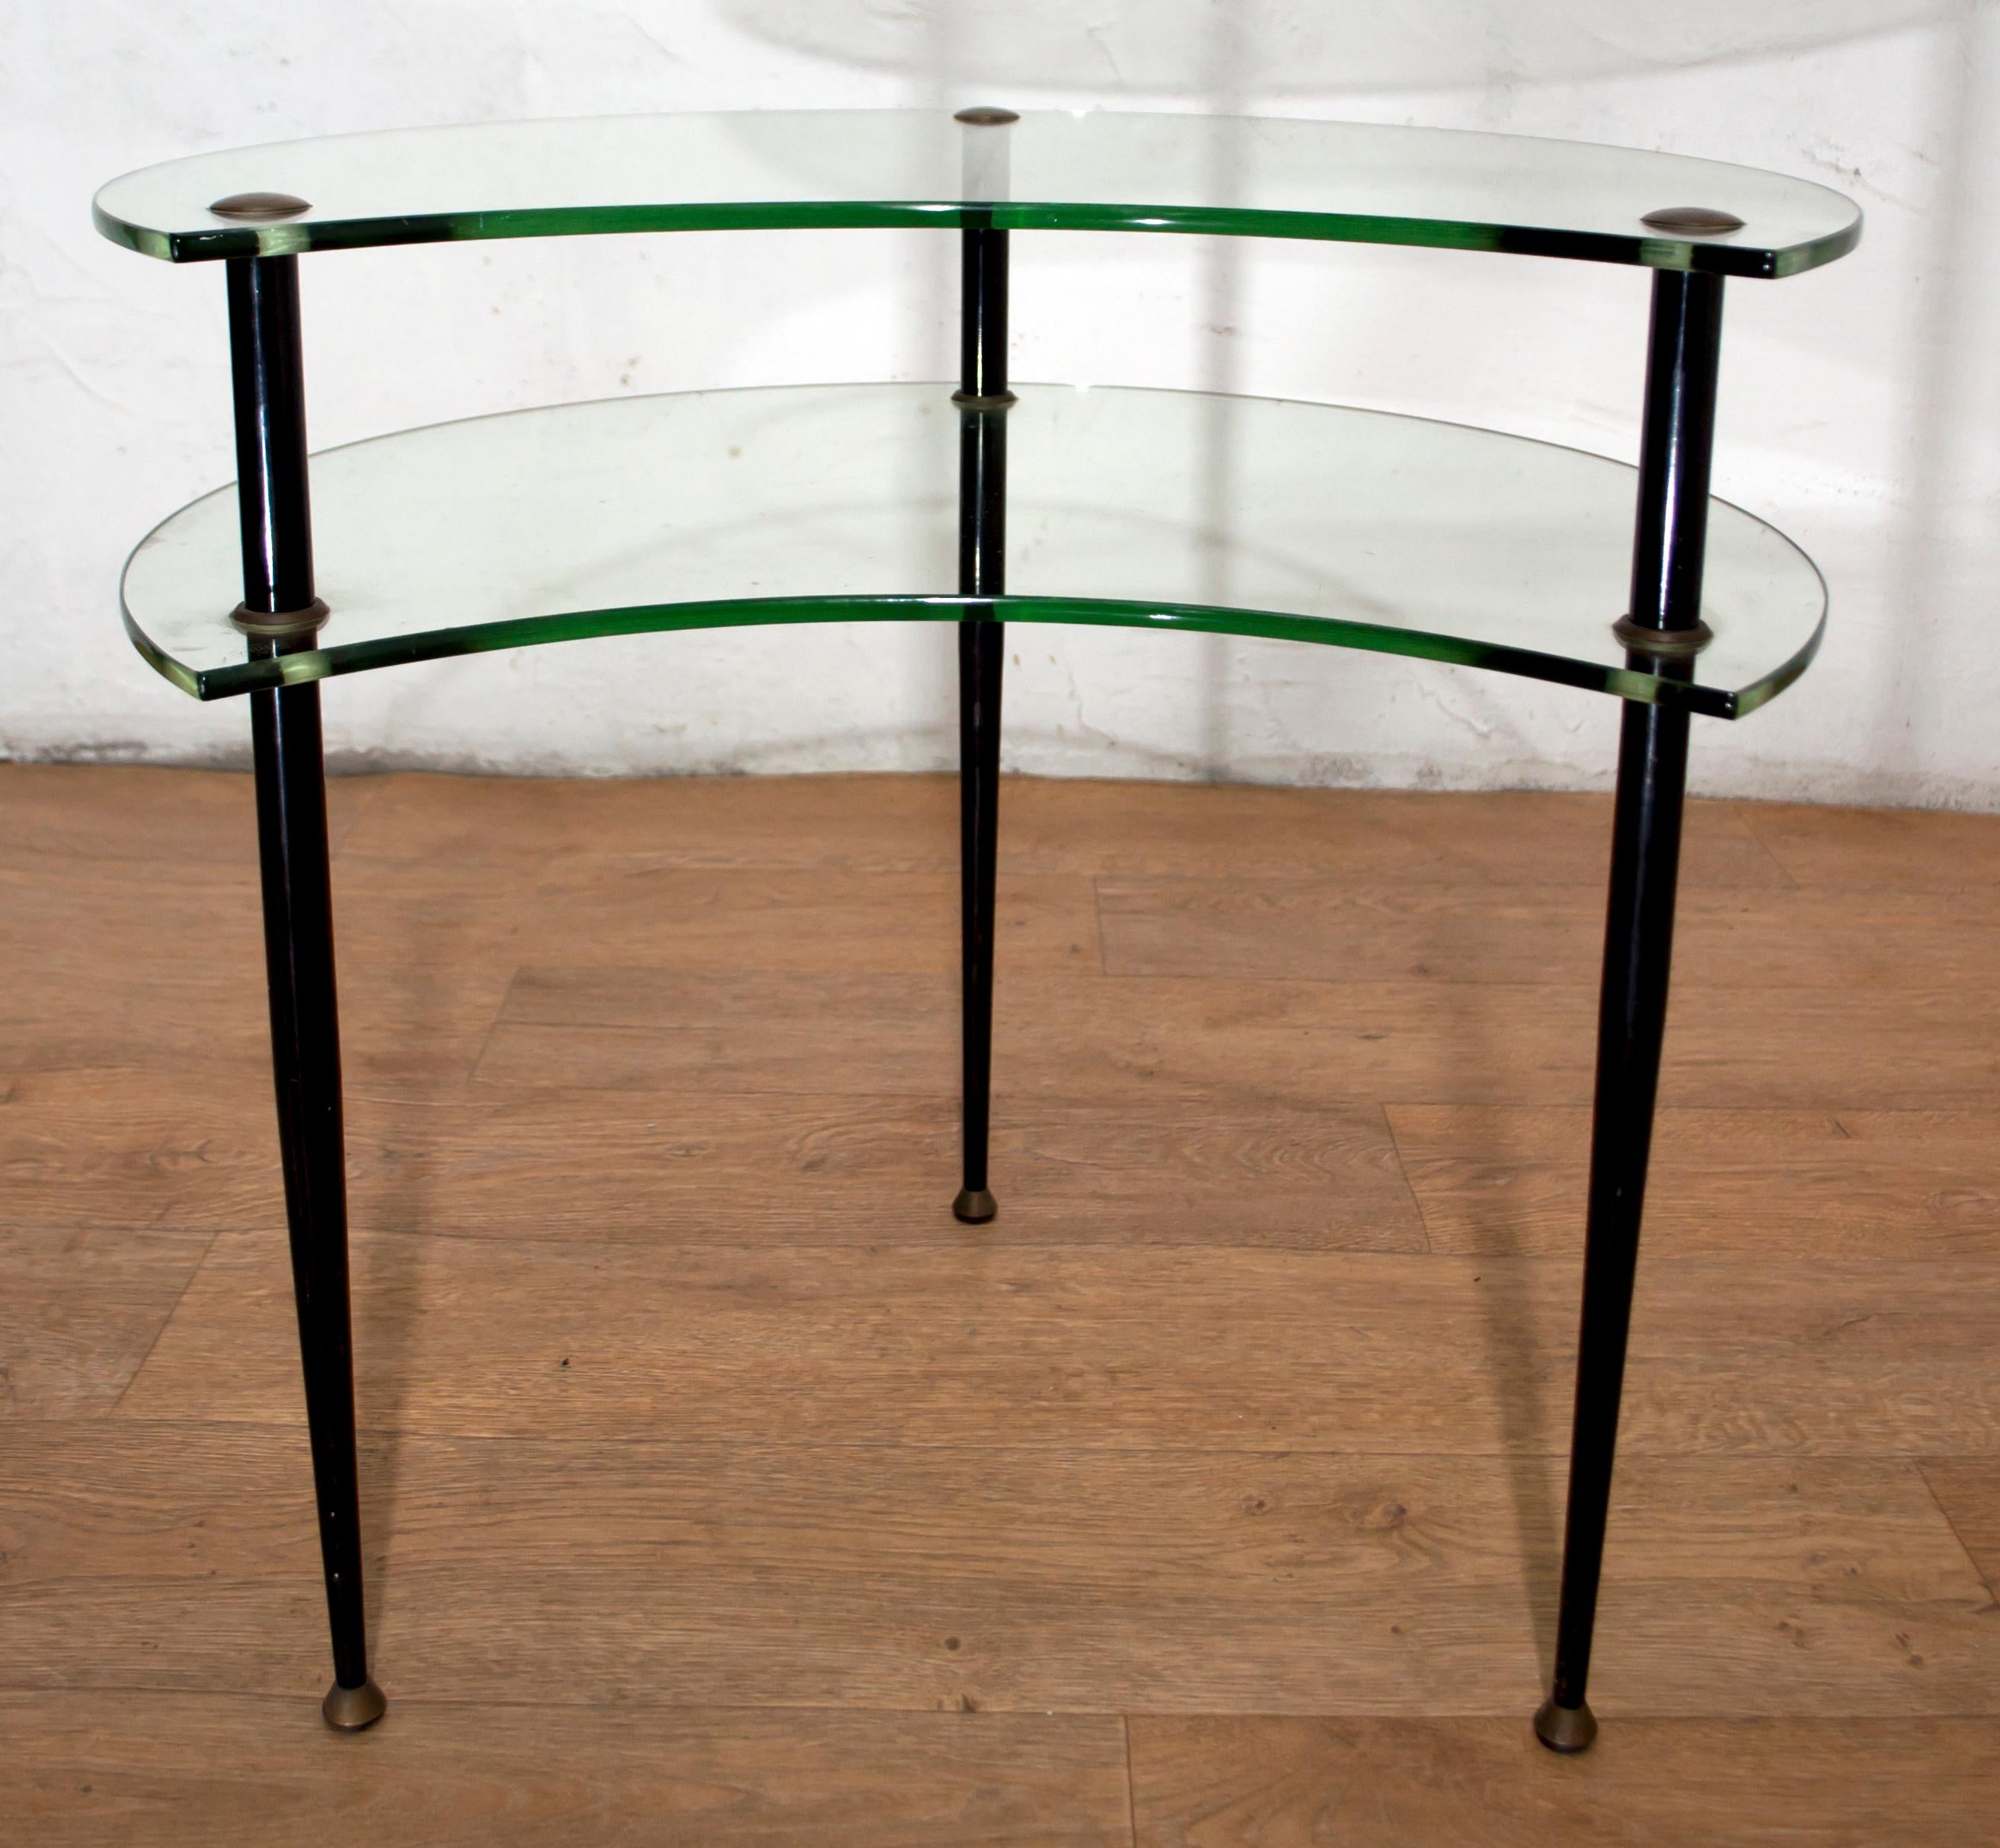 Brass Edoardo Paoli Mid-Century Modern Italian Two Shelves Coffee Table by Vitrex 1955 For Sale